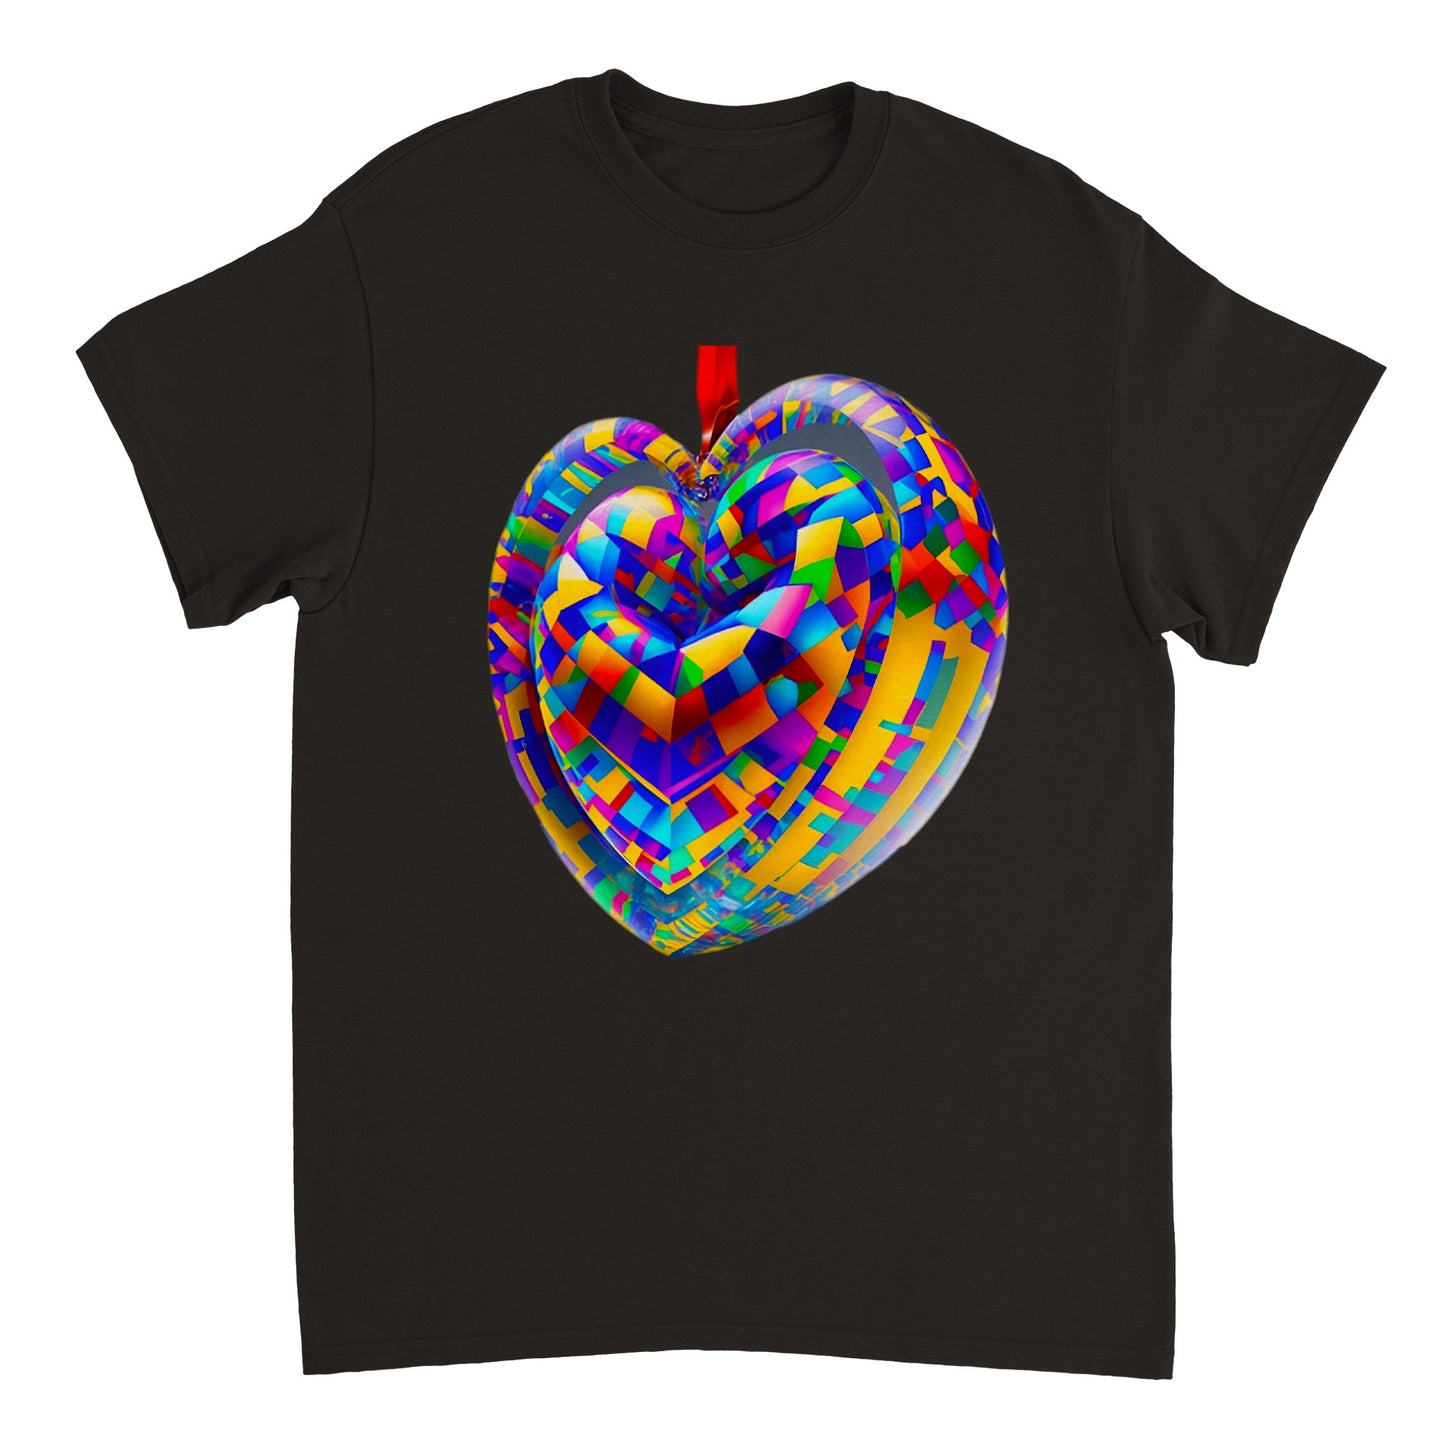 Love Heart - Heavyweight Unisex Crewneck T-shirt 80